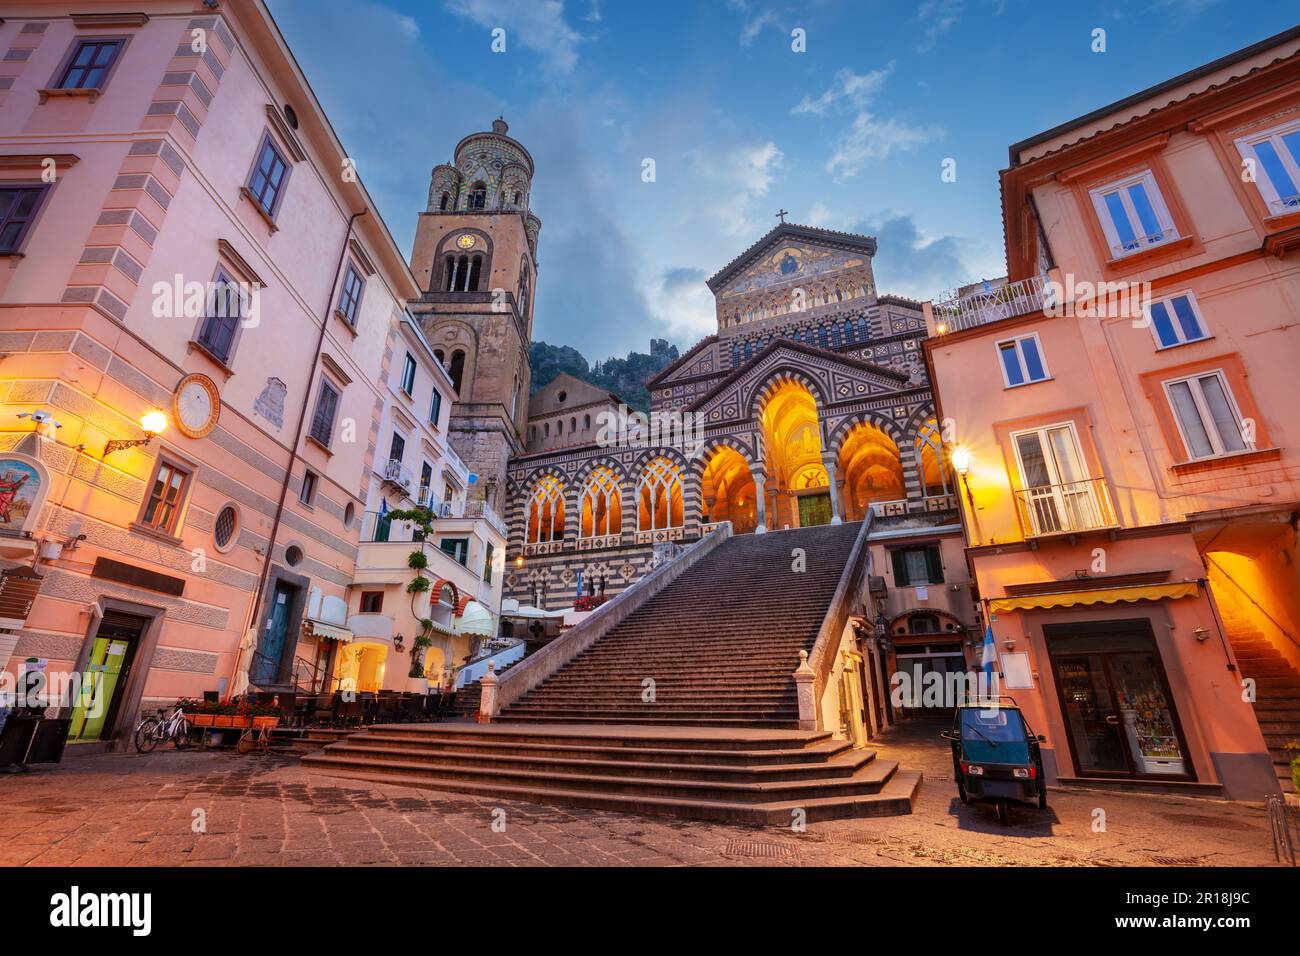 Amalfi, Italia. Immagine del paesaggio urbano della famosa città costiera di Amalfi, situata sulla Costiera Amalfitana, Italia all'alba. Foto Stock